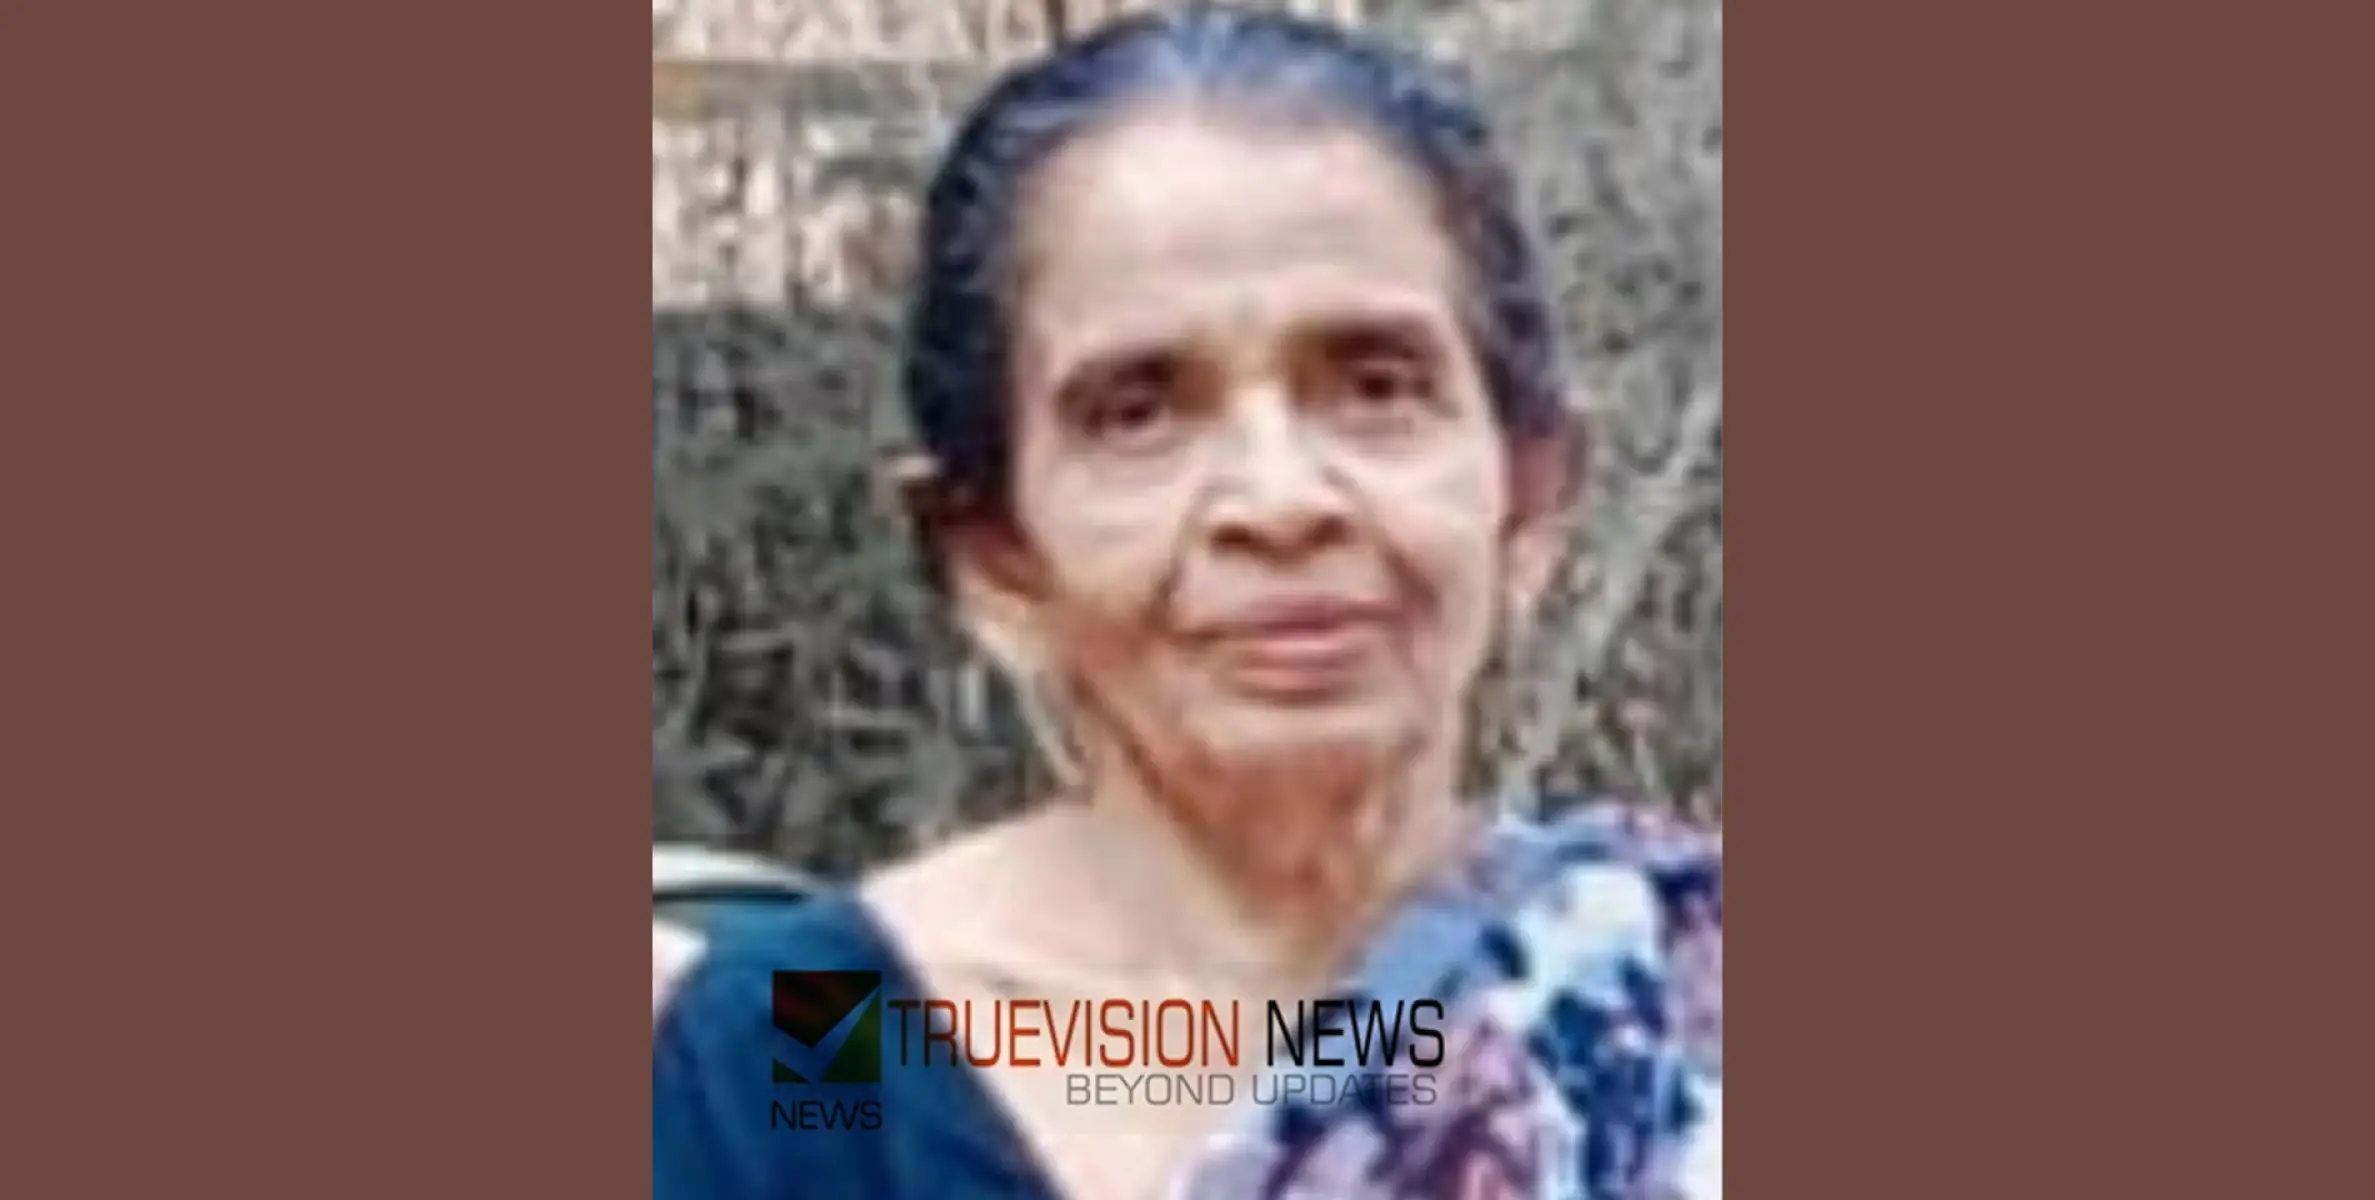 #OBITUARY | ചാനിയംകടവ് പാറക്കെട്ടിൽ ജാനുഅമ്മ അന്തരിച്ചു